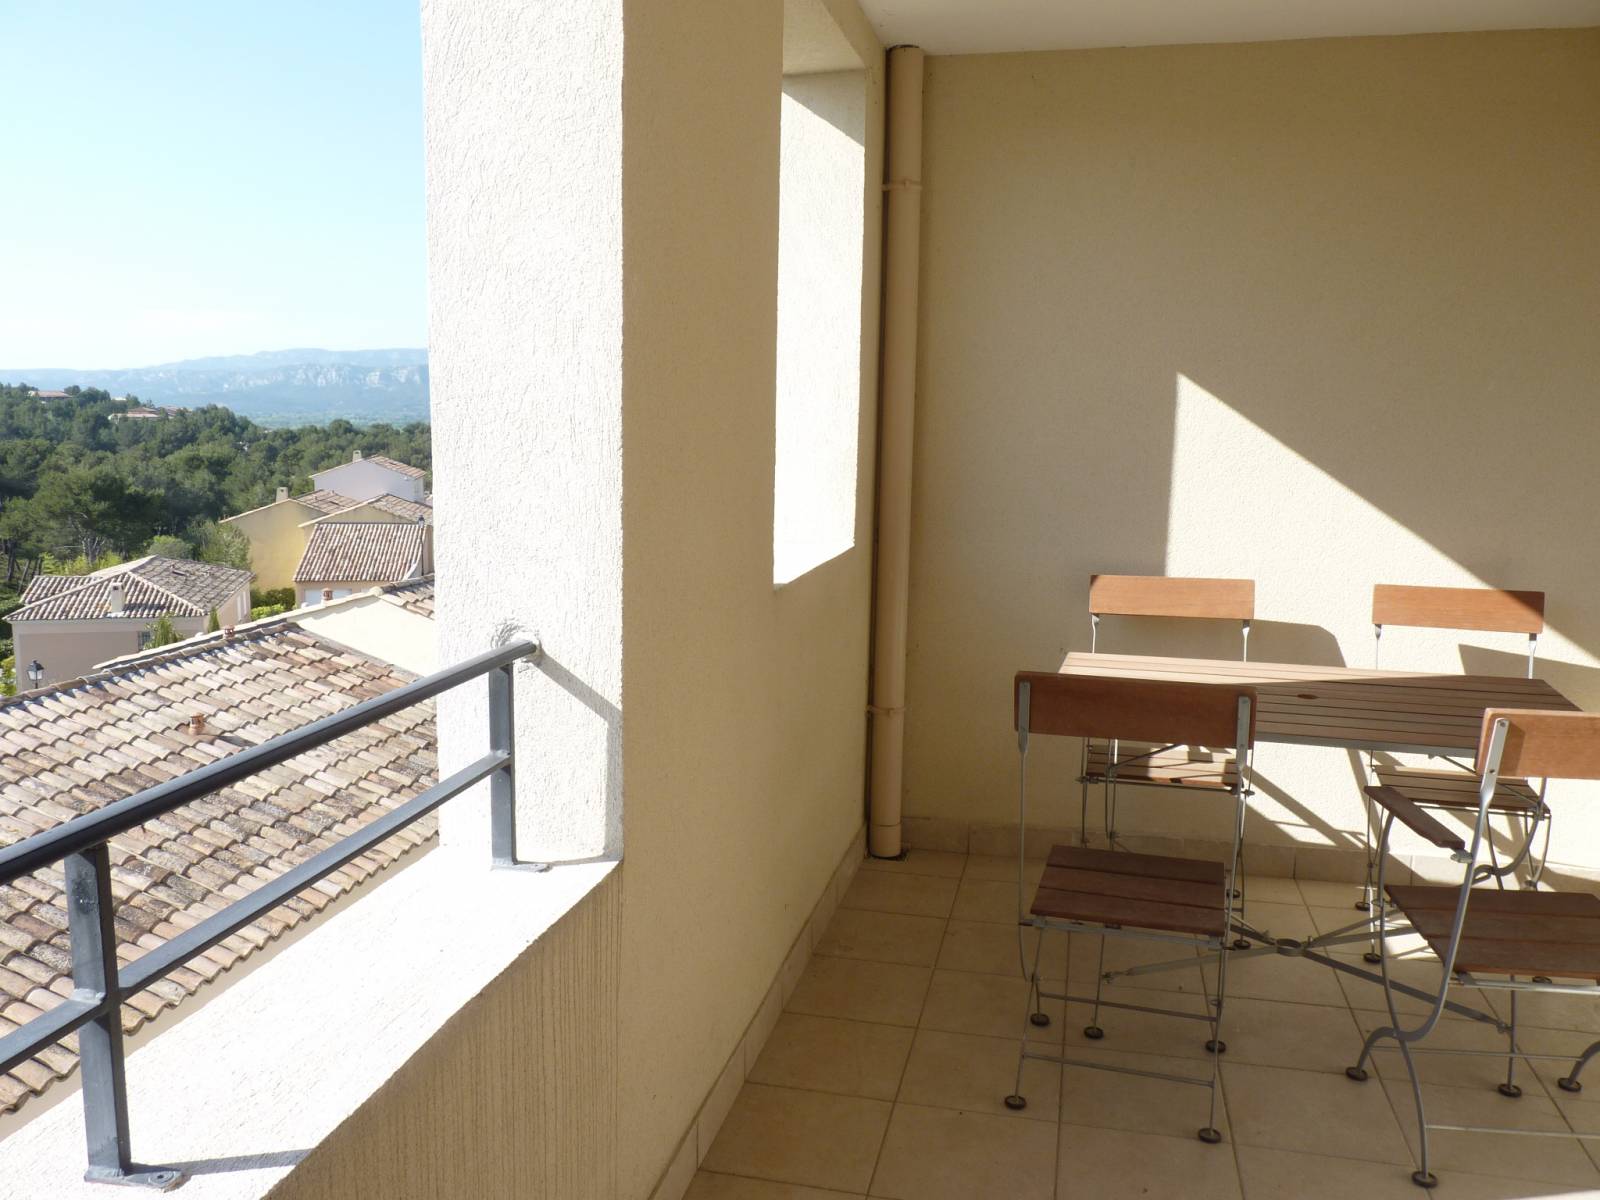 Exclusivité Occupé Appartement  T3 avec piscine ,garage, cave, calme, vue dégagée. Domaine et Golf de Pont Royal en Provence  came et ensoleillé